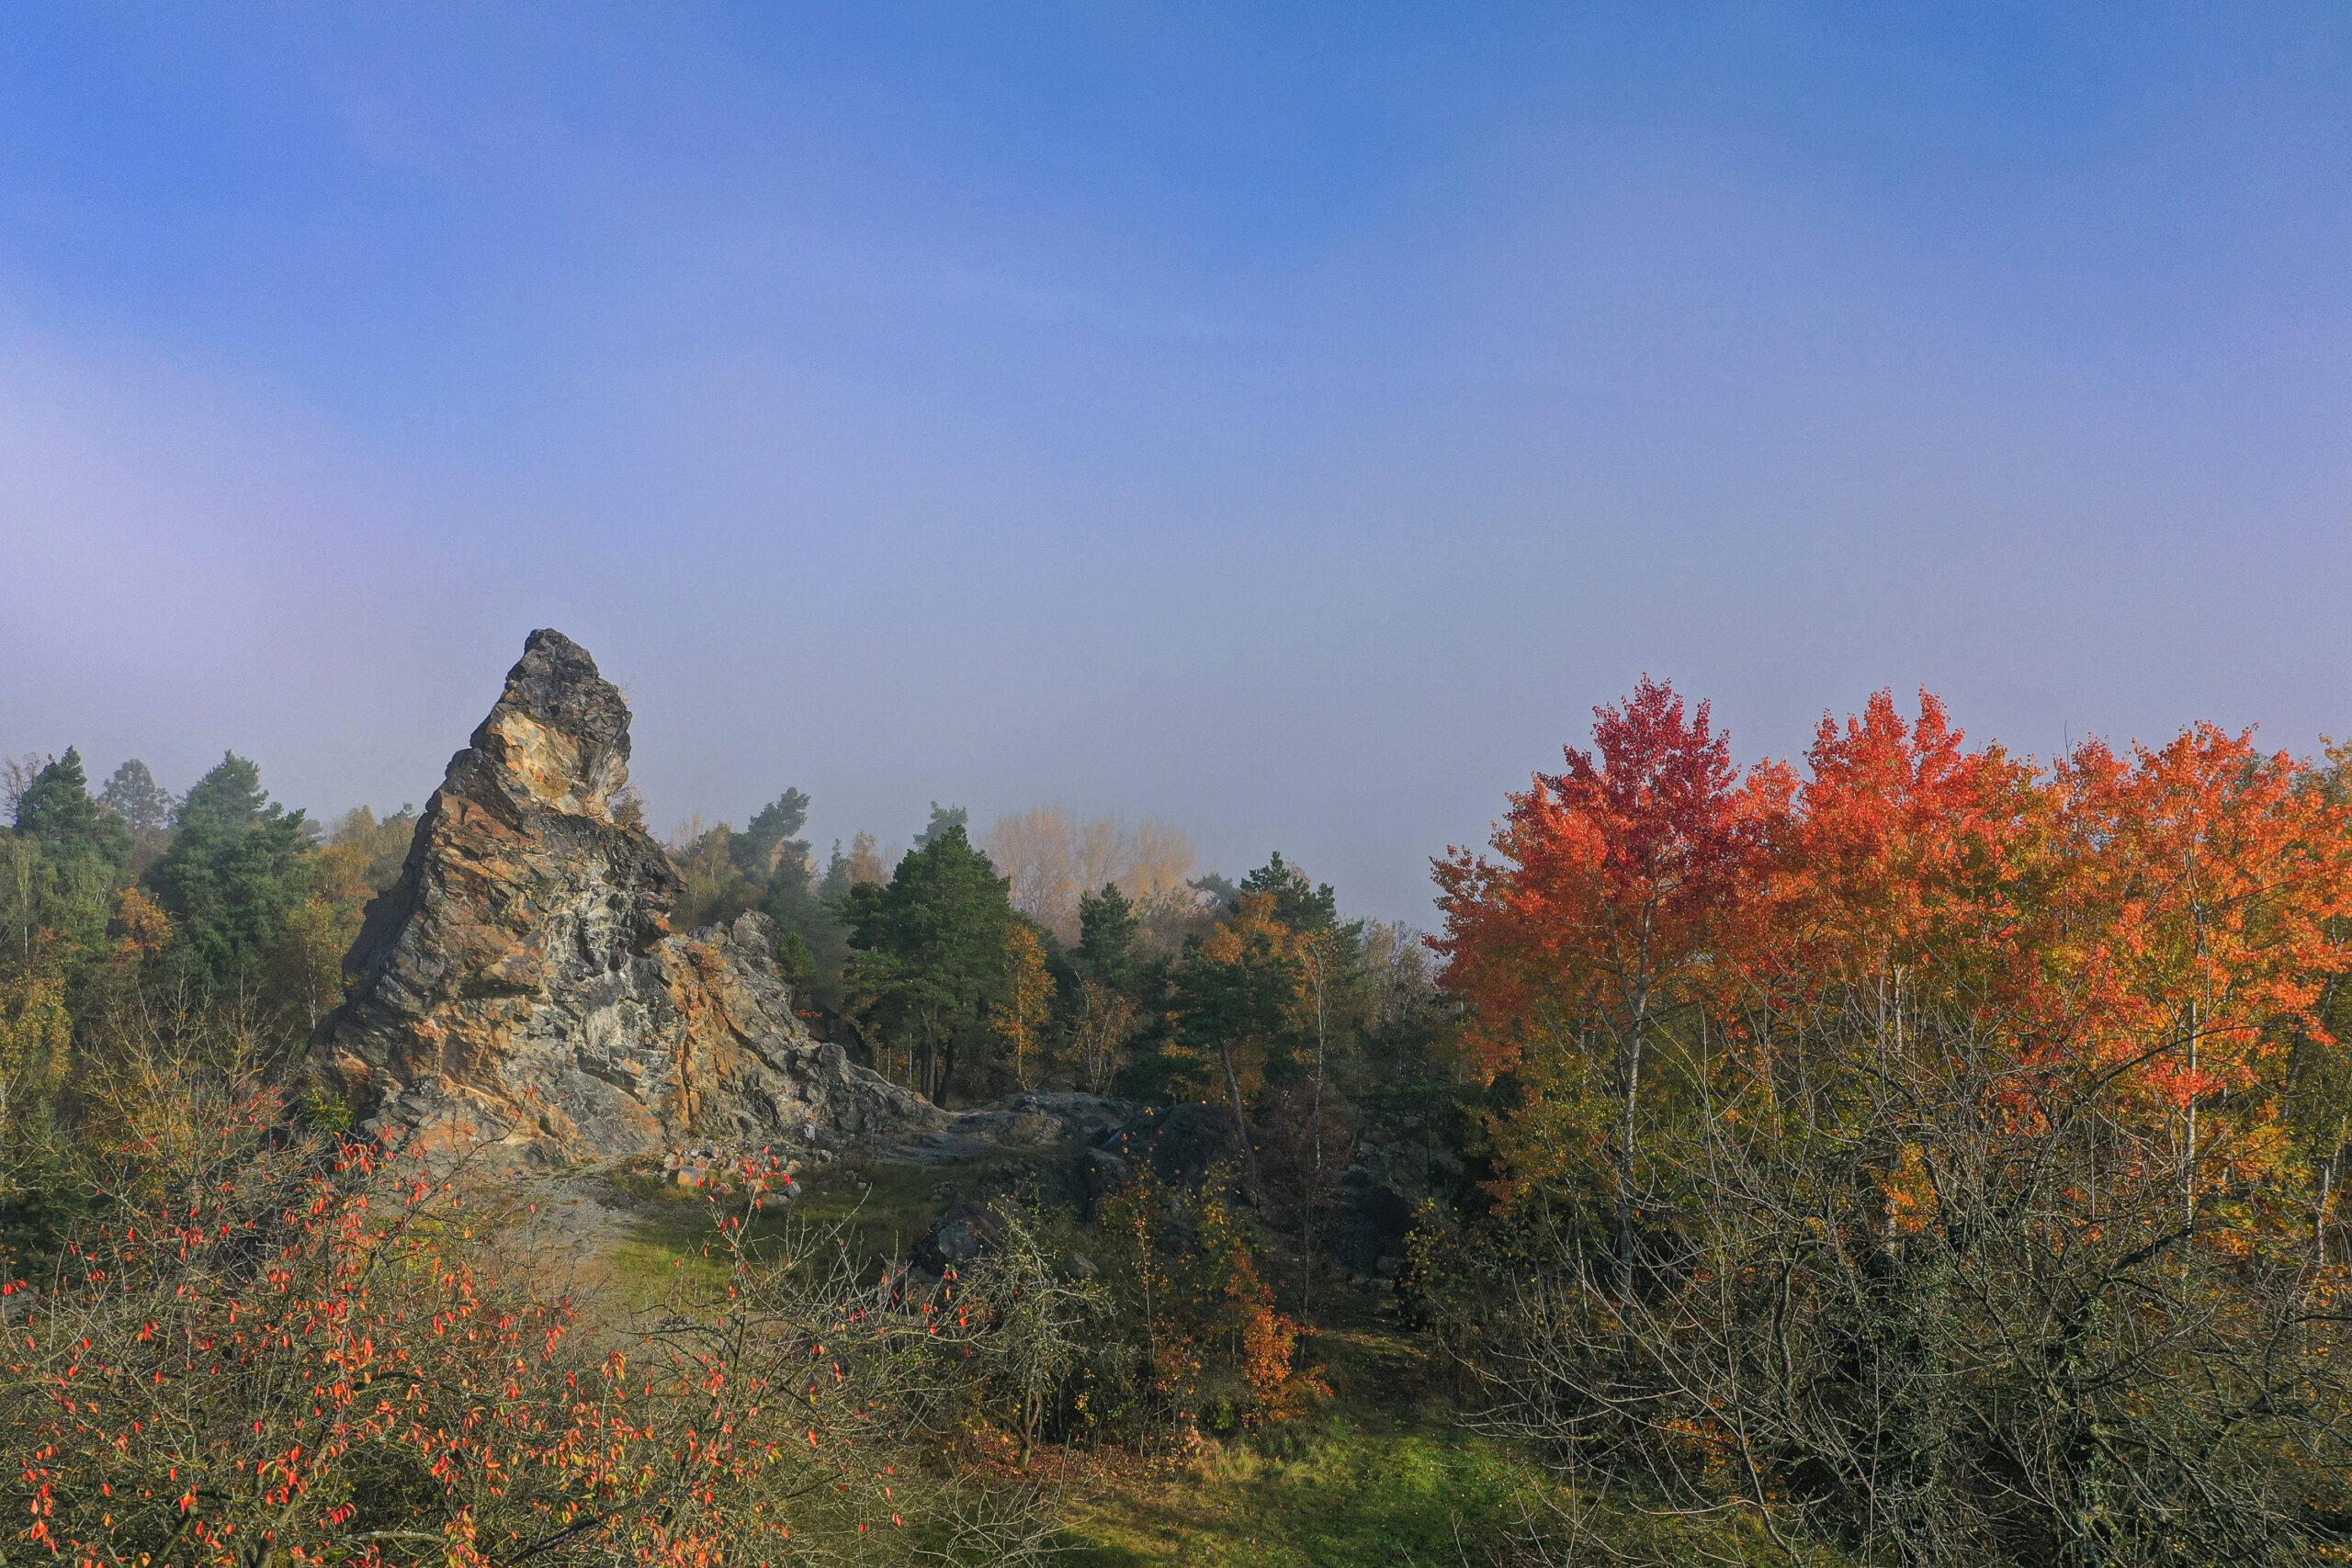 Pohled z ptačí perspektivy. V levé části se tyčí jehlancovitý skalní útvar, pravé části dominuje několik oranžově až červeně zbarvených listnatých stromů (osiky). V horní polovině snímku vidíme nebe s rozpouštějící se mlhou.